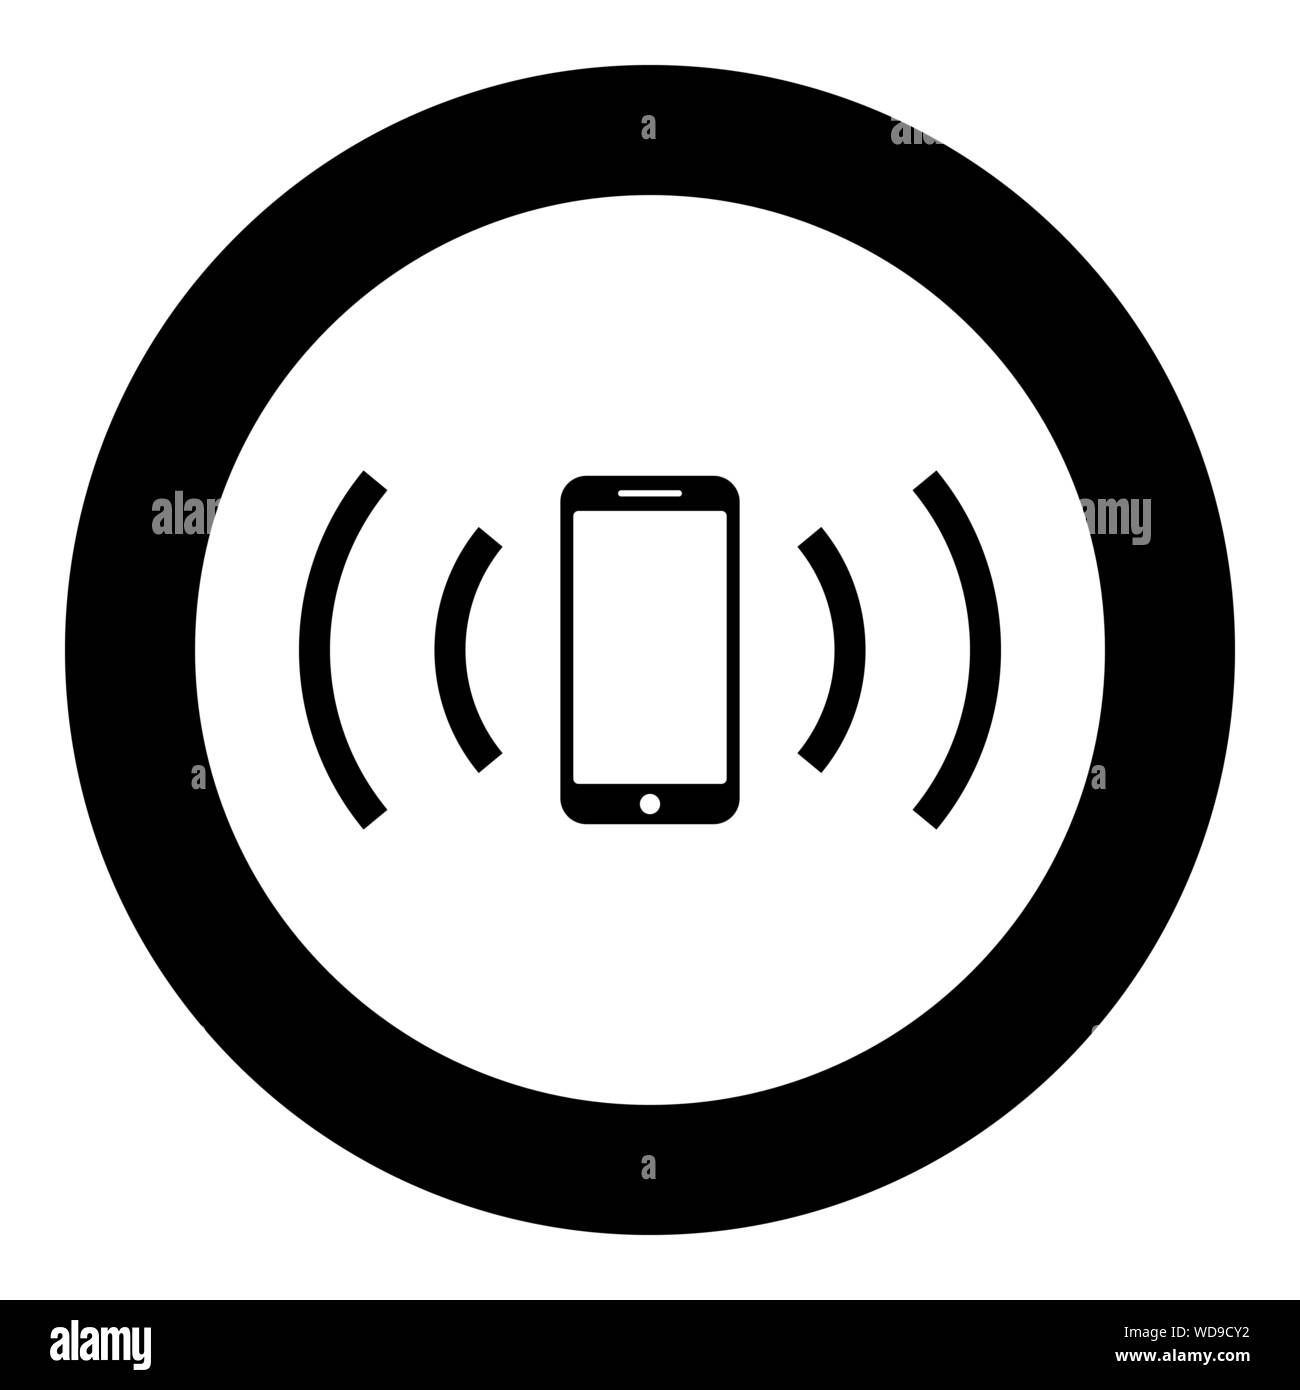 Smartphone sendet Funkwellen Schallwelle emittierenden Wellen Konzept Symbol im Kreis runden schwarzen Farbe Vektor-illustration Flat Style simple Image Stock Vektor